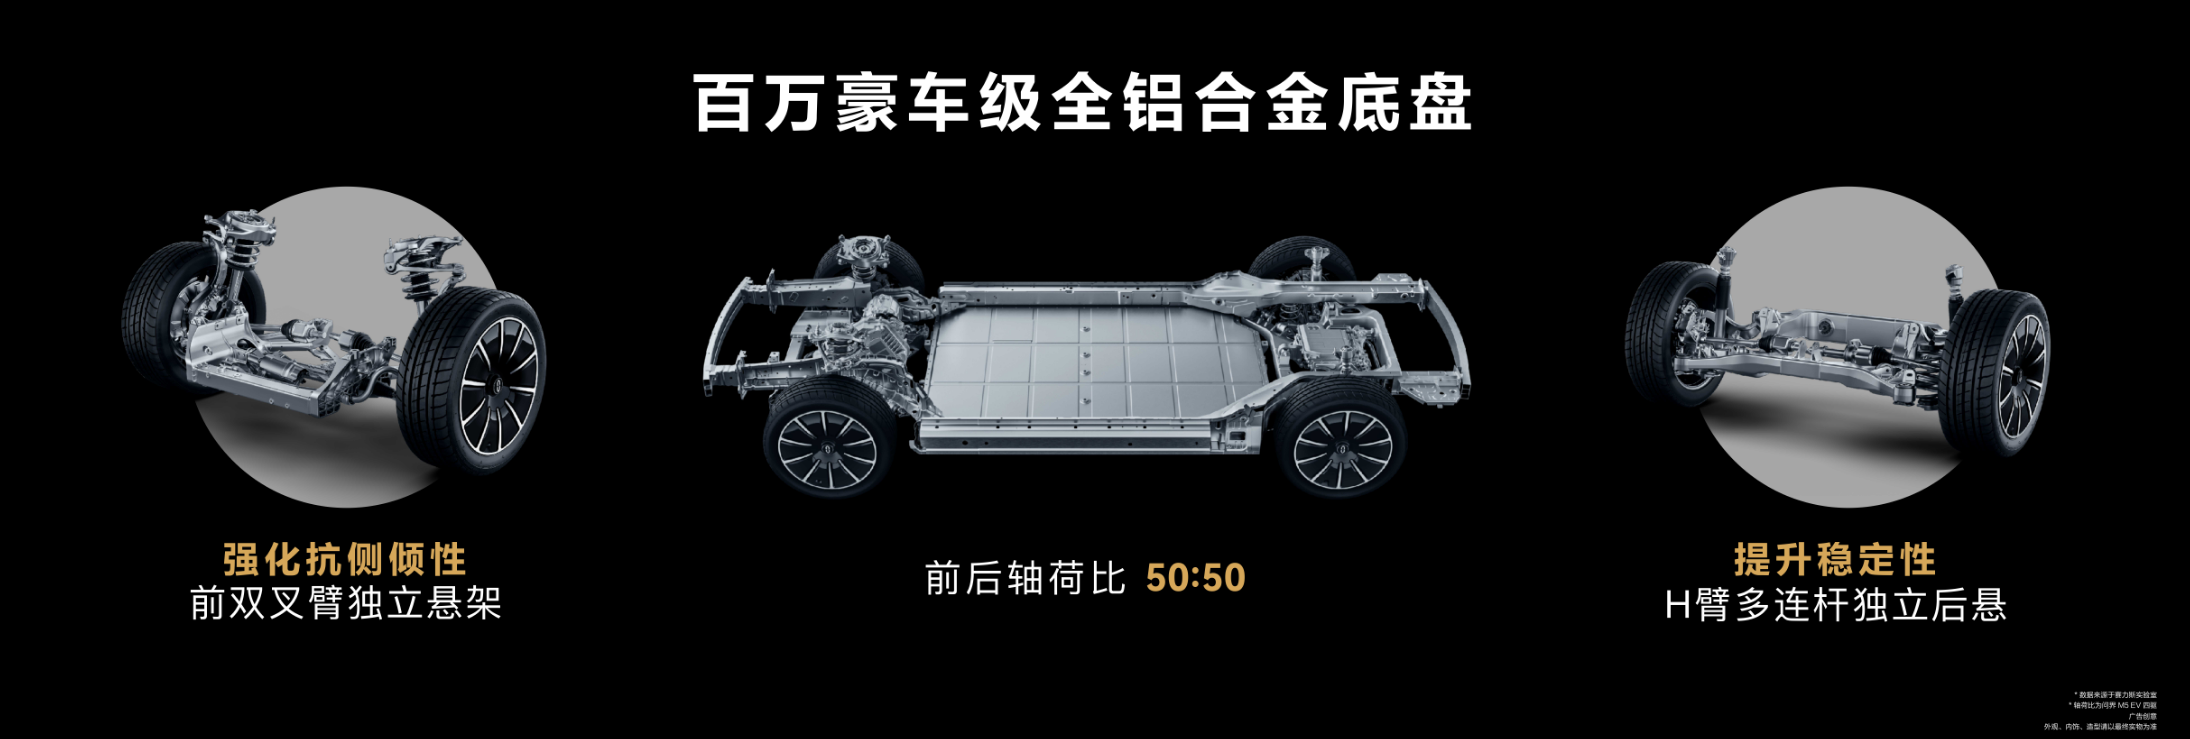 首搭HUAWEI DATS/售价28.86万元起 AITO首款纯电车型问界M5上市